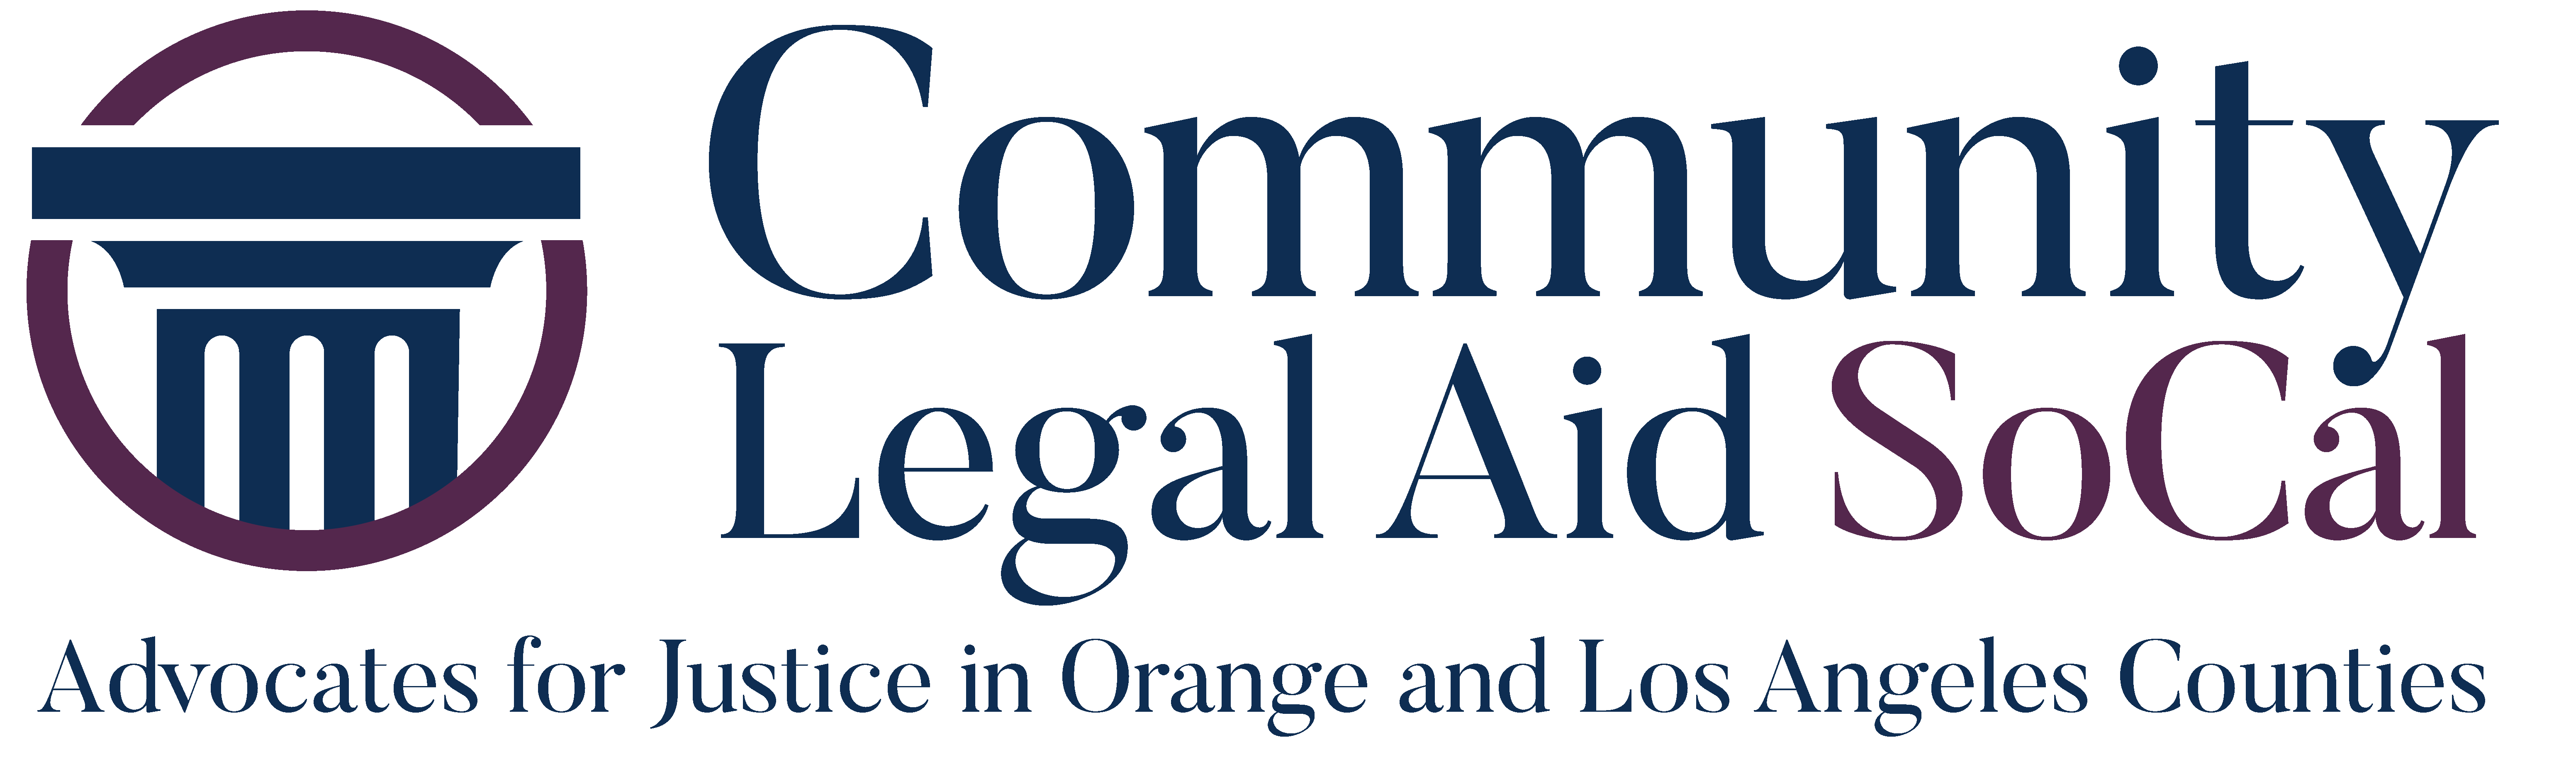 SoCal Logo - Community Legal Aid SoCal | Community Legal Aid